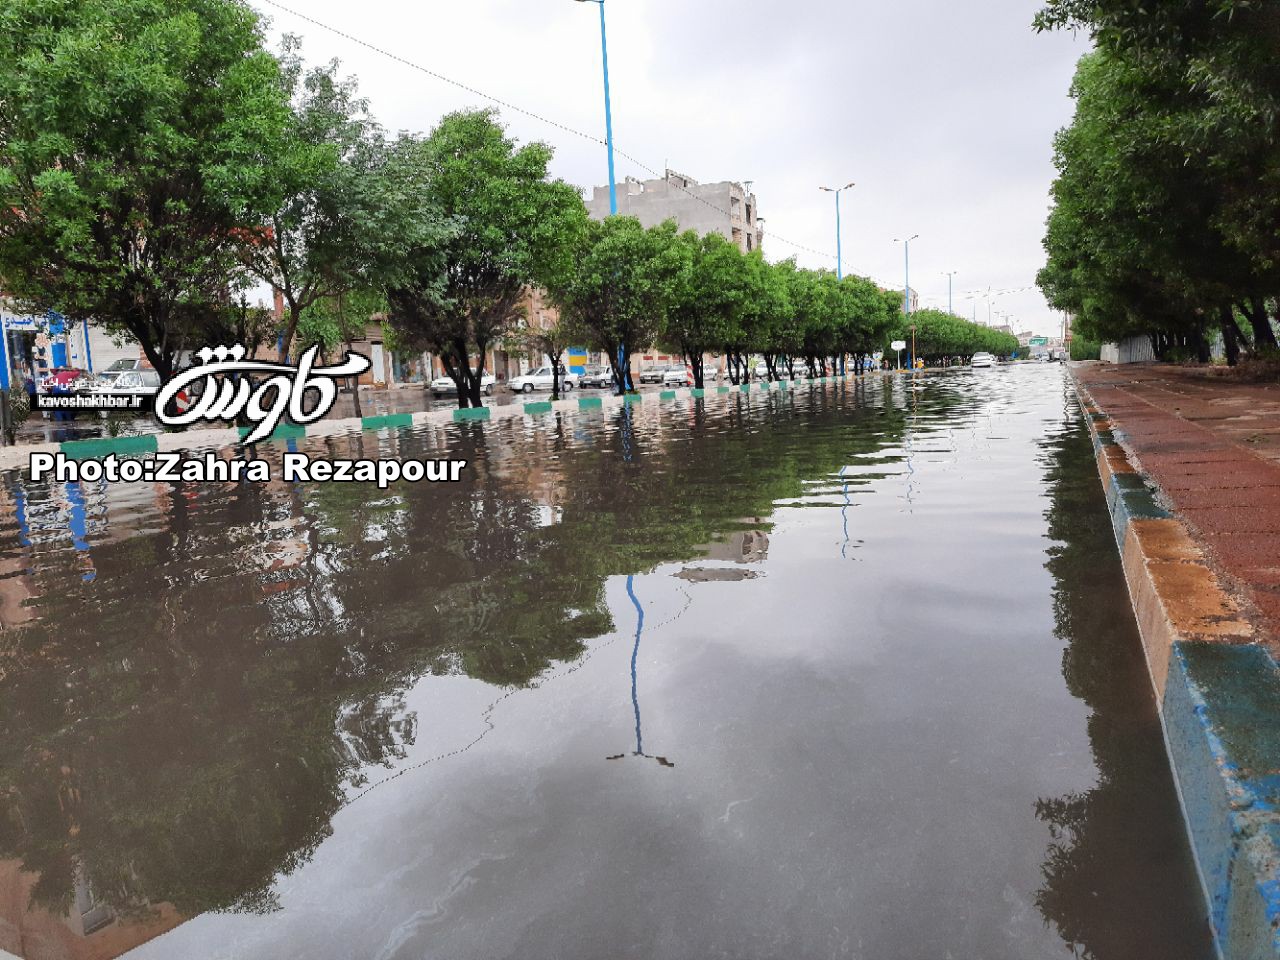 تحلیل هواشناسی خوزستان در خصوص بارندگی اهواز/ حداکثر۷۰ تا ۷۵ میلیمتر در دو روز در مرکز شهر/ حاشیه 52 میلیمتر